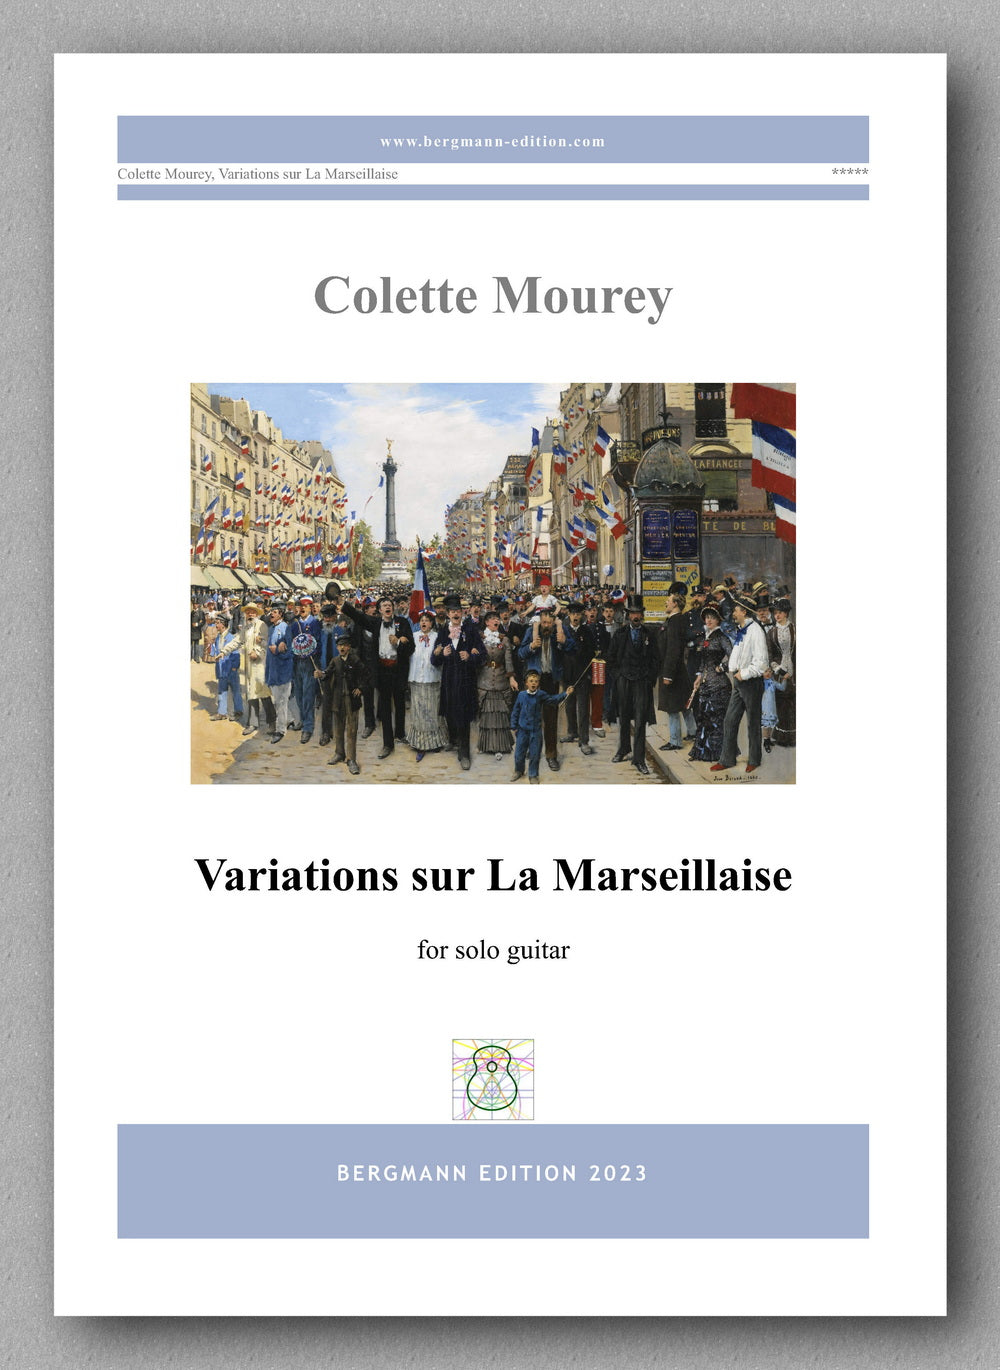 Colette Mourey, Variations sur La Marseillaise - preview of the cover